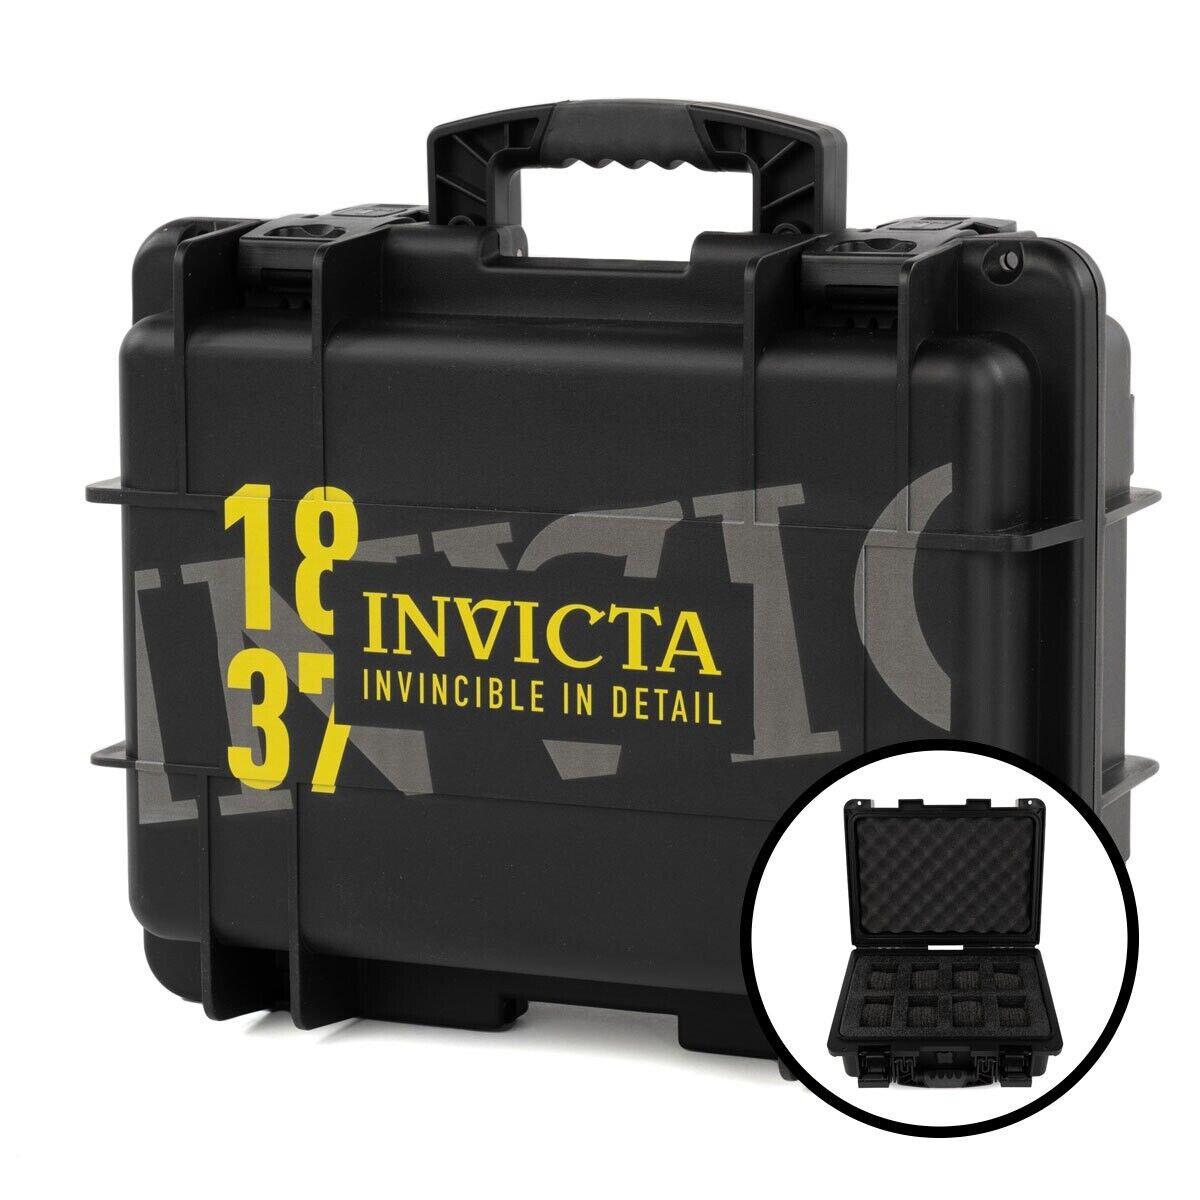 Invicta 8-Slot Impact Watch Case BlackDC8-1837BLK Usa